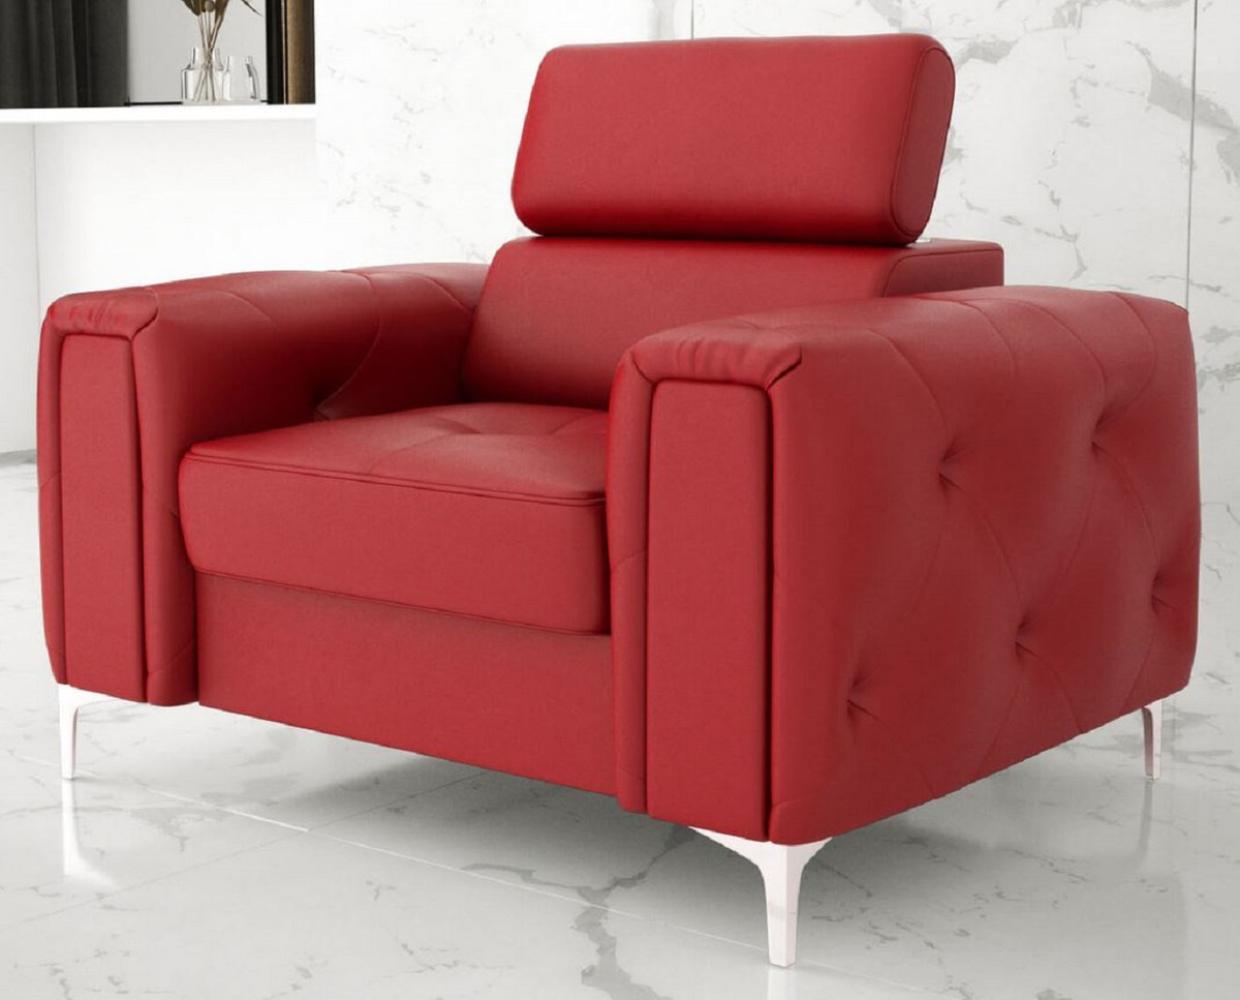 Casa Padrino Wohnzimmer Sessel 110 x 100 x H. 78-99 cm - Verschieden Farben - Moderner Sessel mit verstellbarer Kopfstütze - Moderne Wohnzimmer Möbel Bild 1